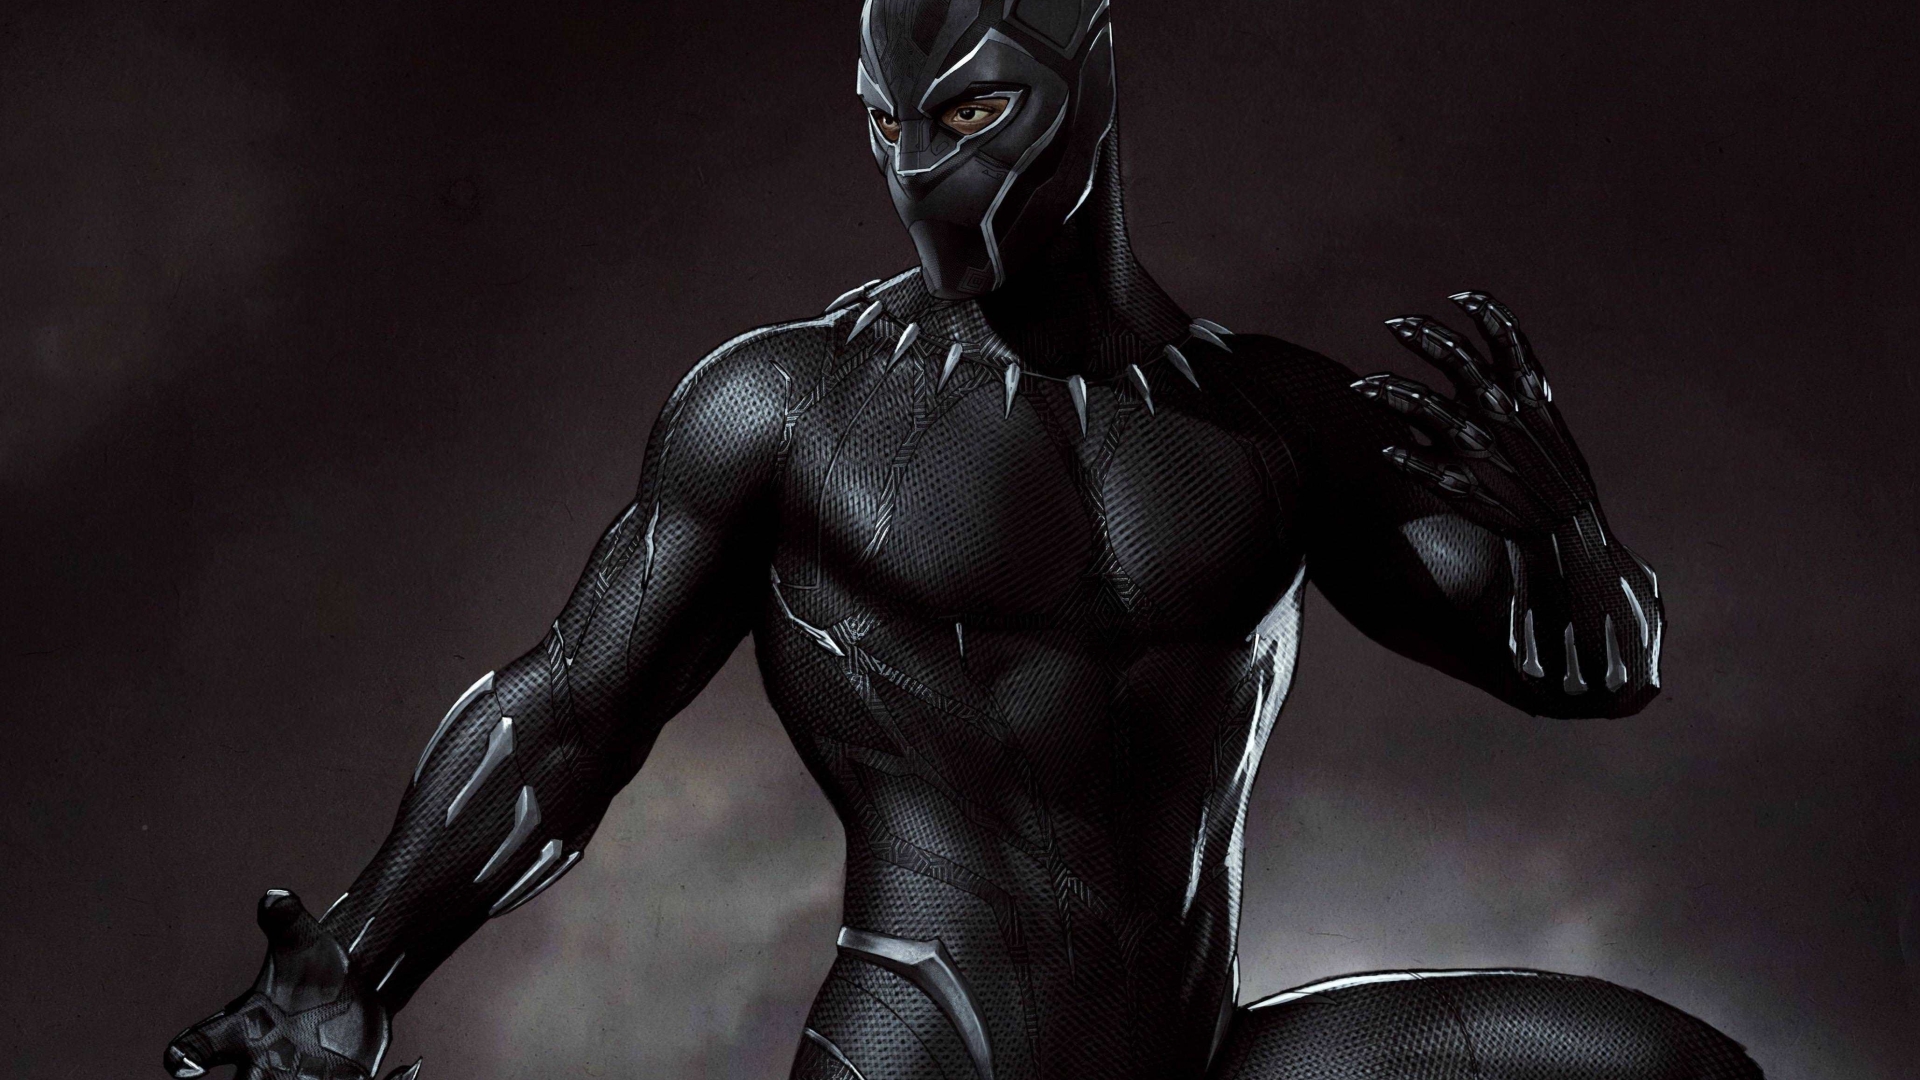 Download Marvel Black Panther Artwork 1920x1080 Resolution HD 4K